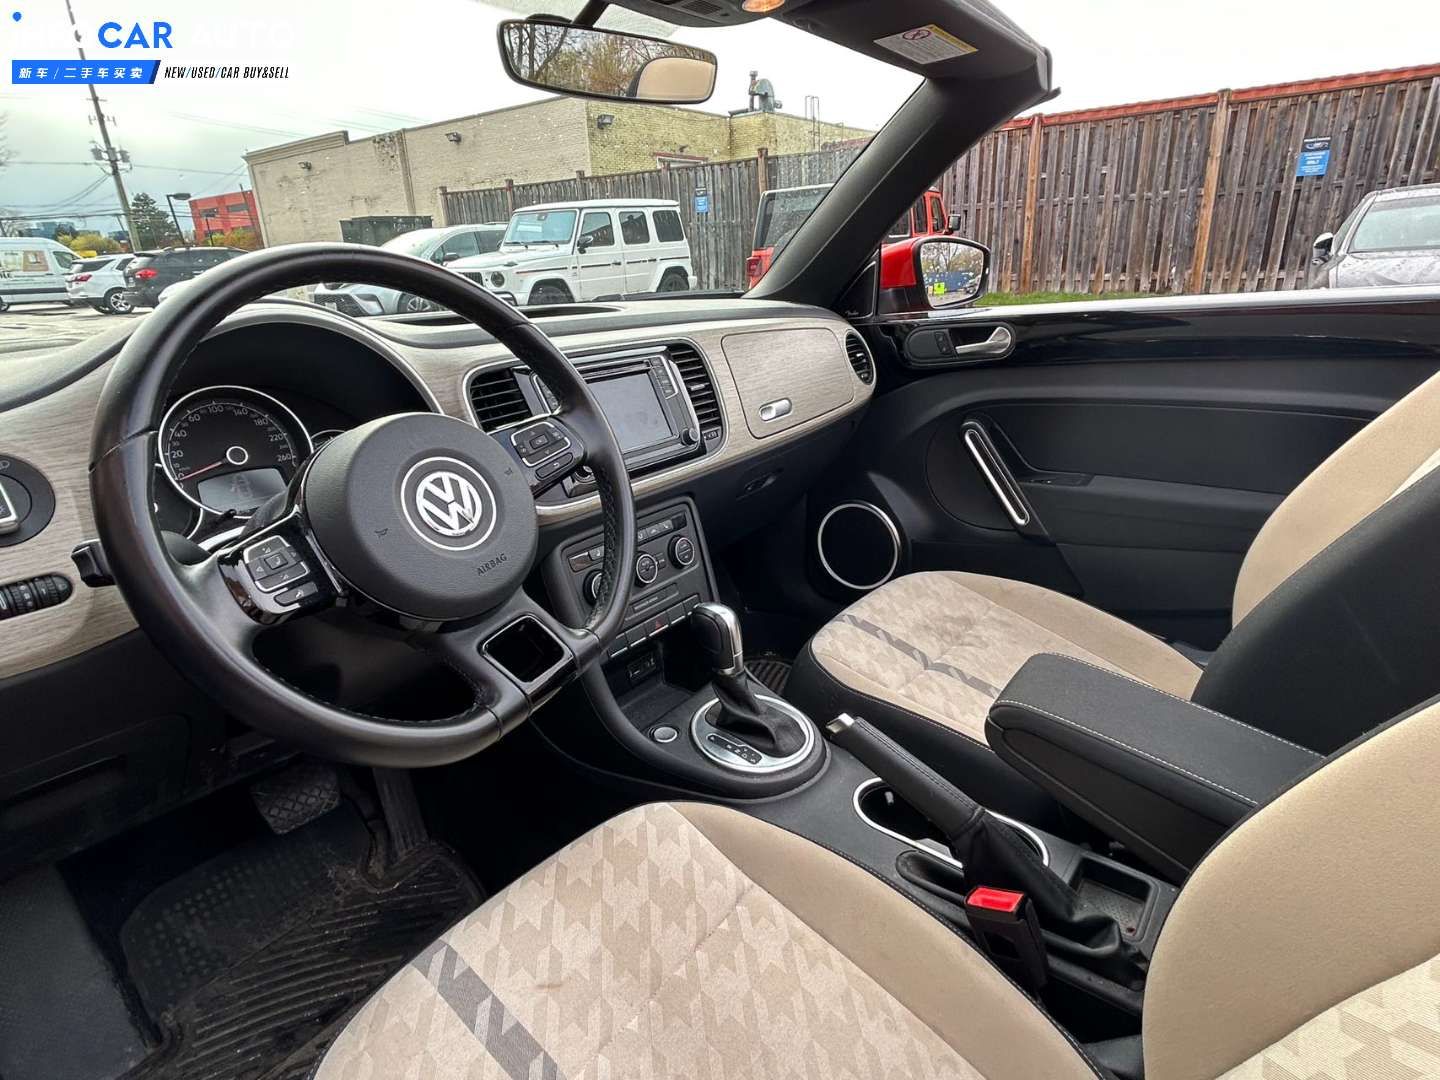 2018 Volkswagen Beetle S - INFOCAR - Toronto Auto Trading Platform